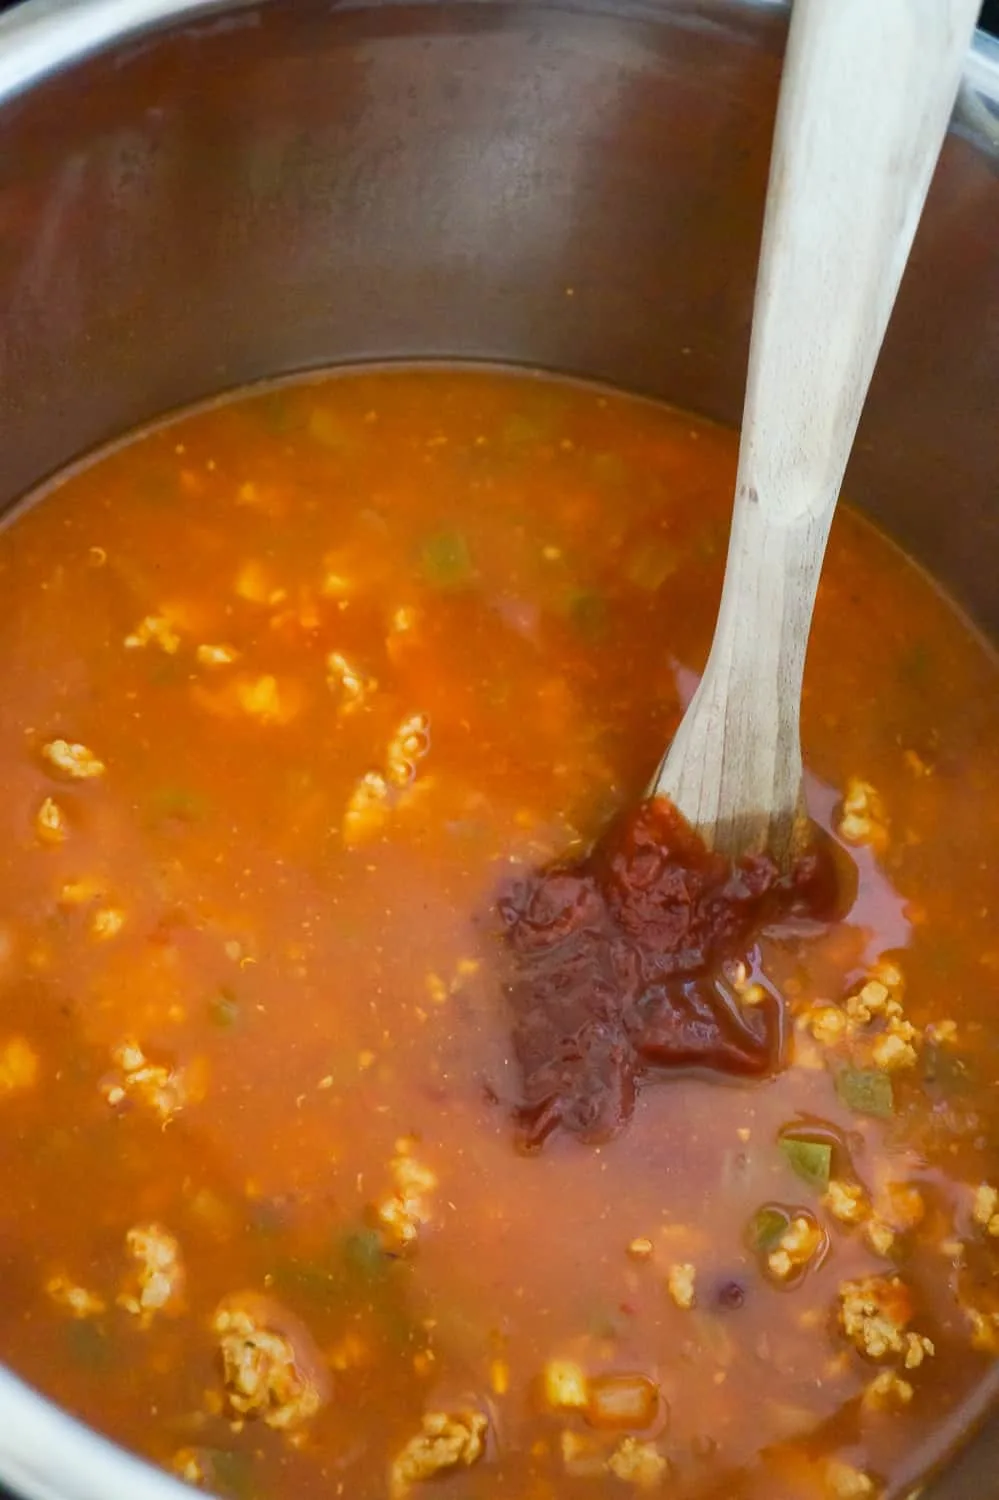 chili sauce added to ground turkey chili